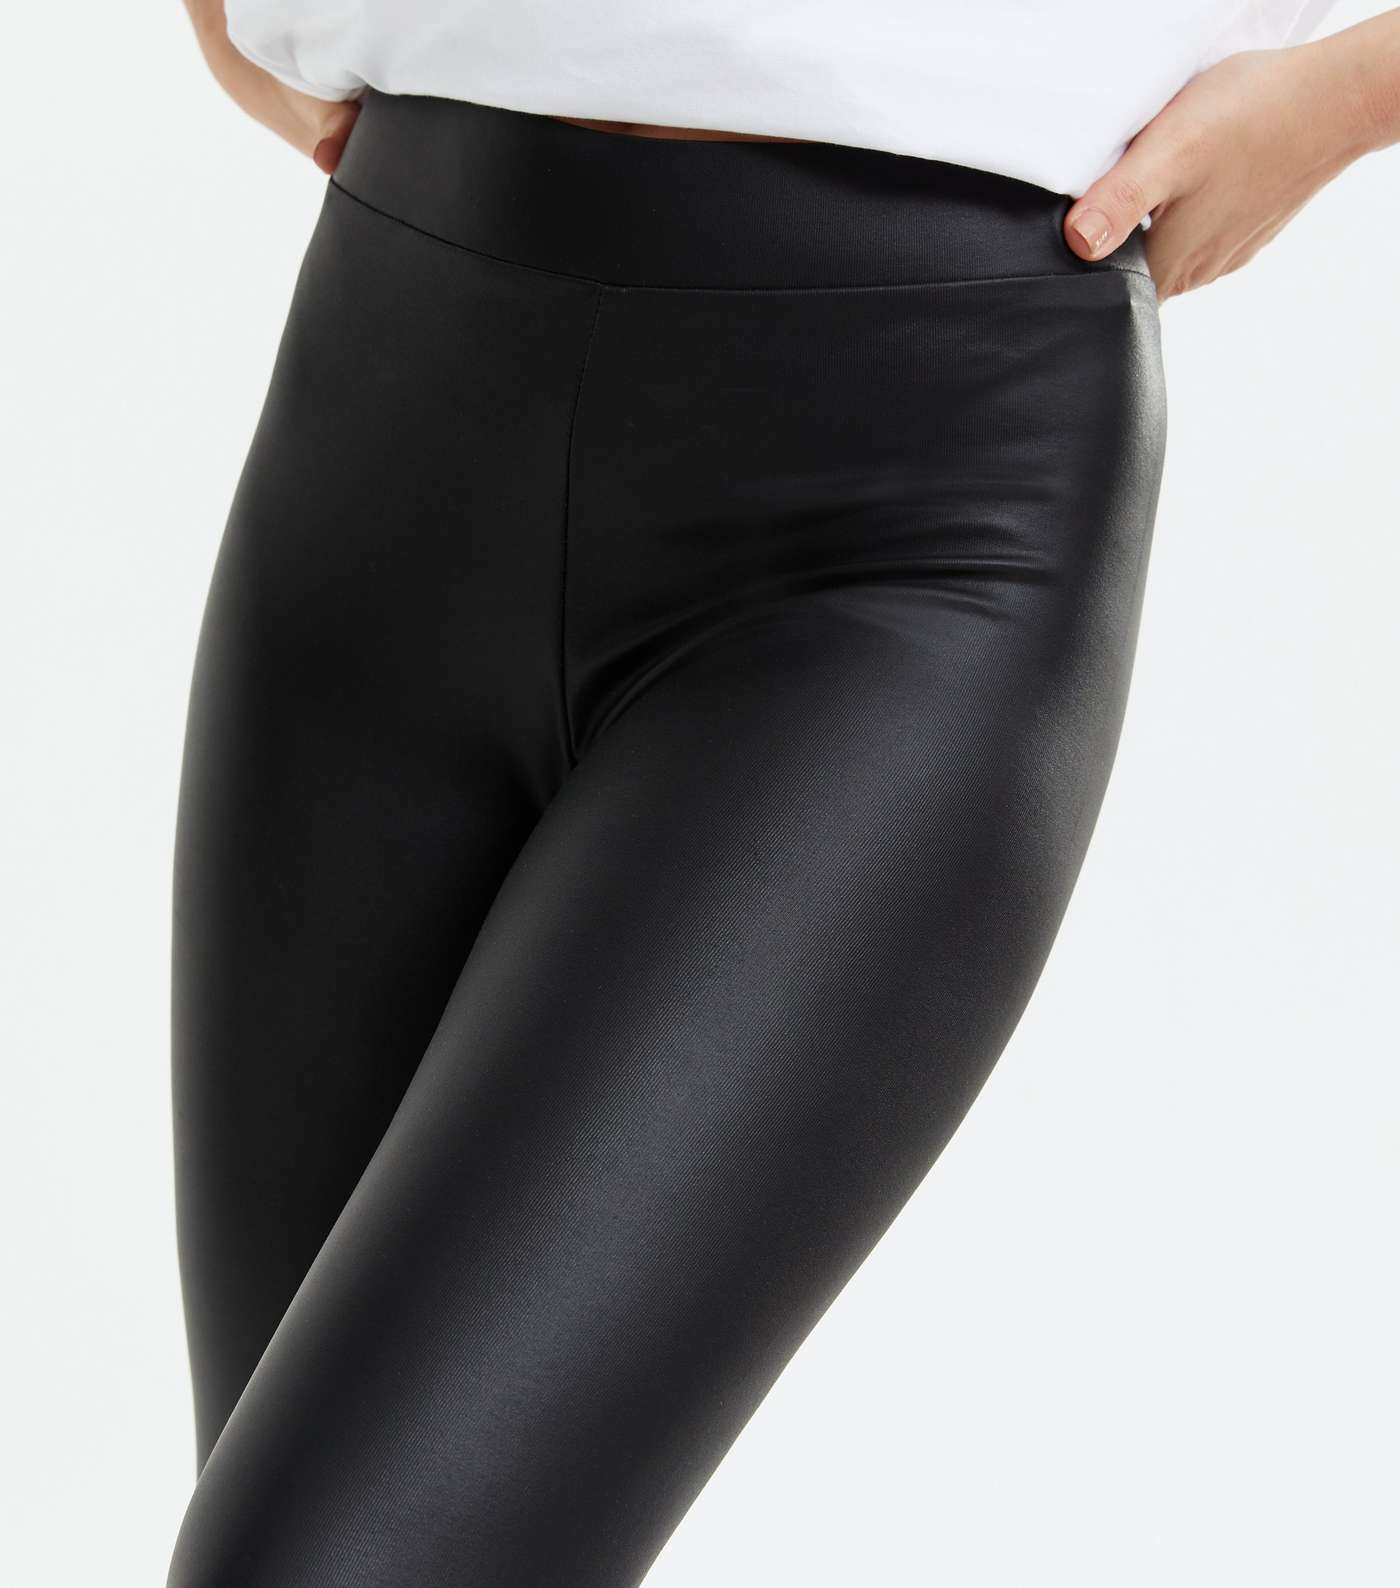 Petite Black Leather-Look High Waist Leggings Image 3